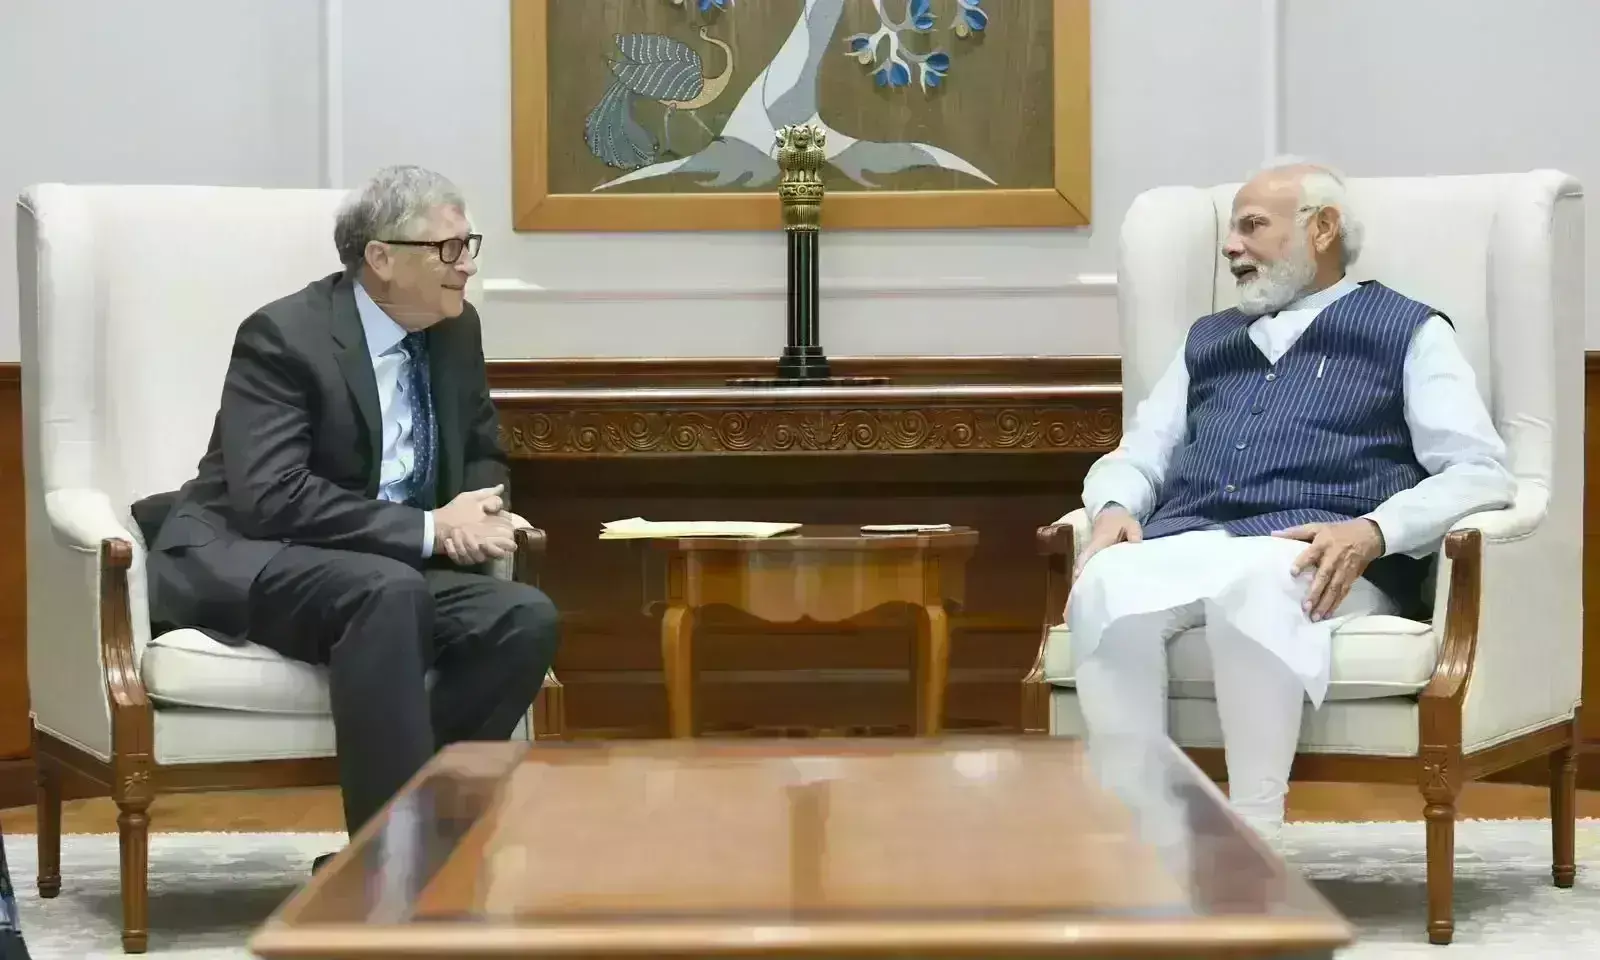 बिल गेट्स ने की प्रधानमंत्री से मुलाकात, कहा- भारत की प्रगति को लेकर पहले से ज्यादा आशावादी